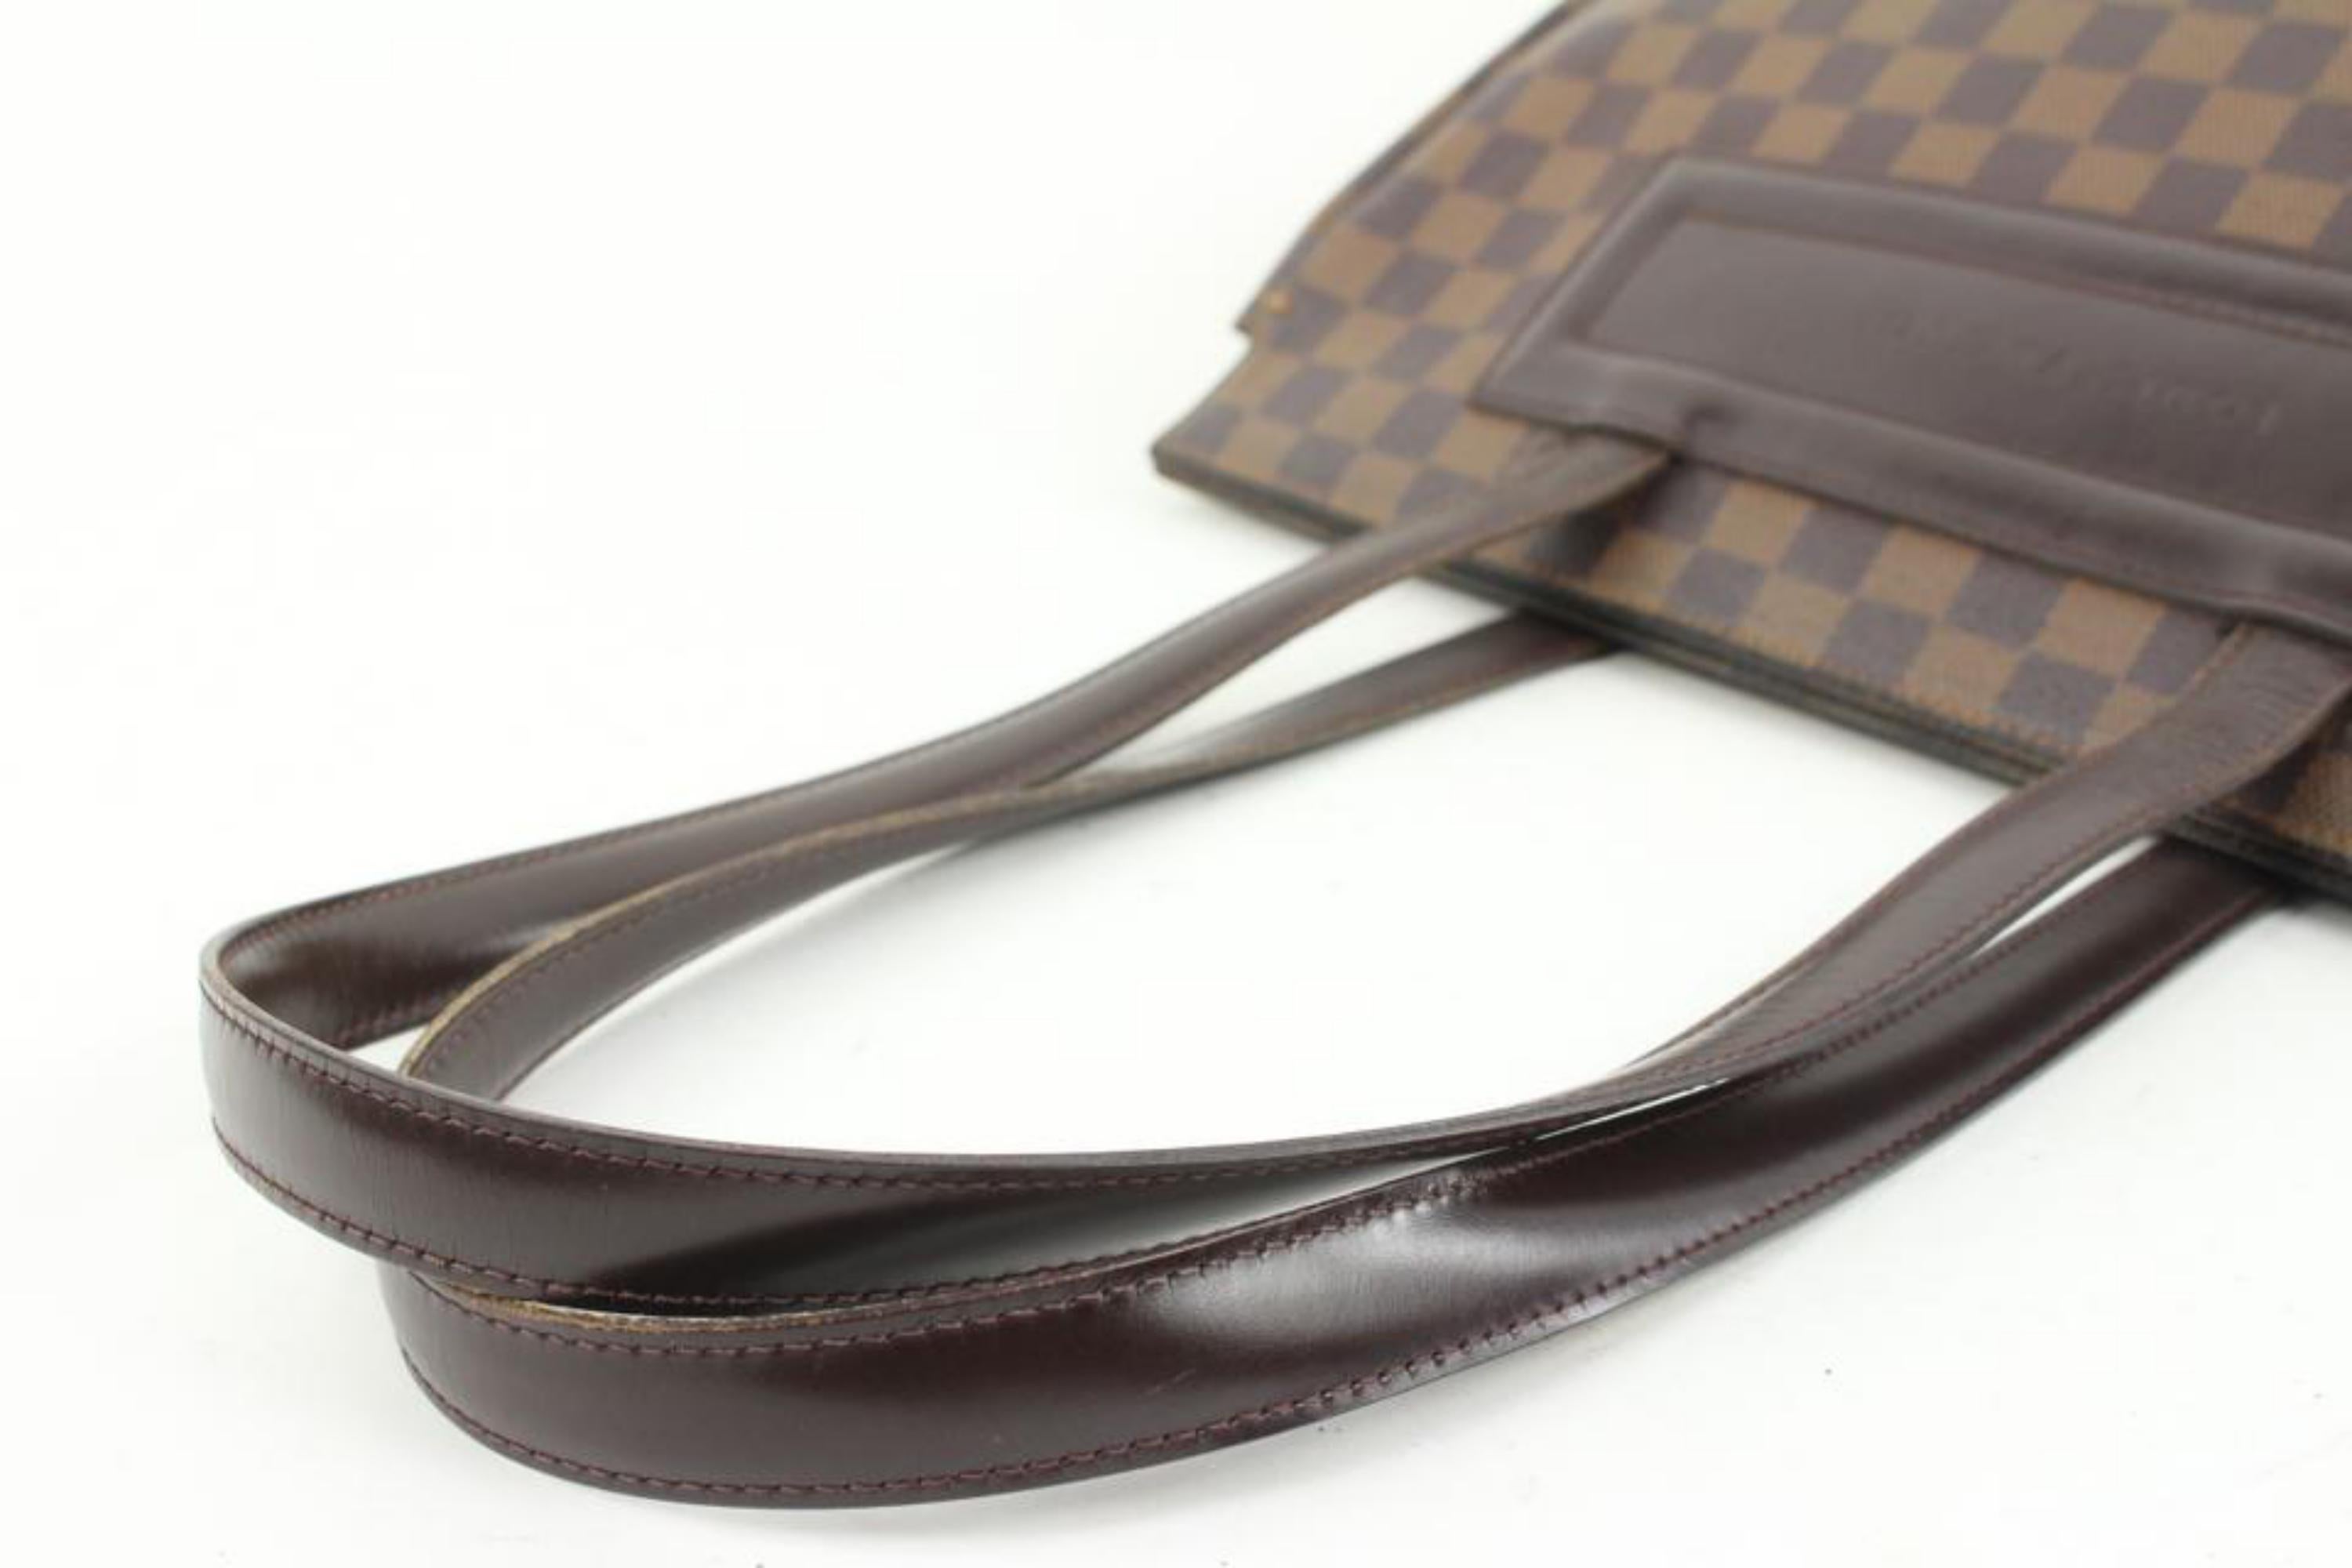 Louis Vuitton Damier Ebene Parioli PM Shopper Tote Bag S215lv94 For Sale 2